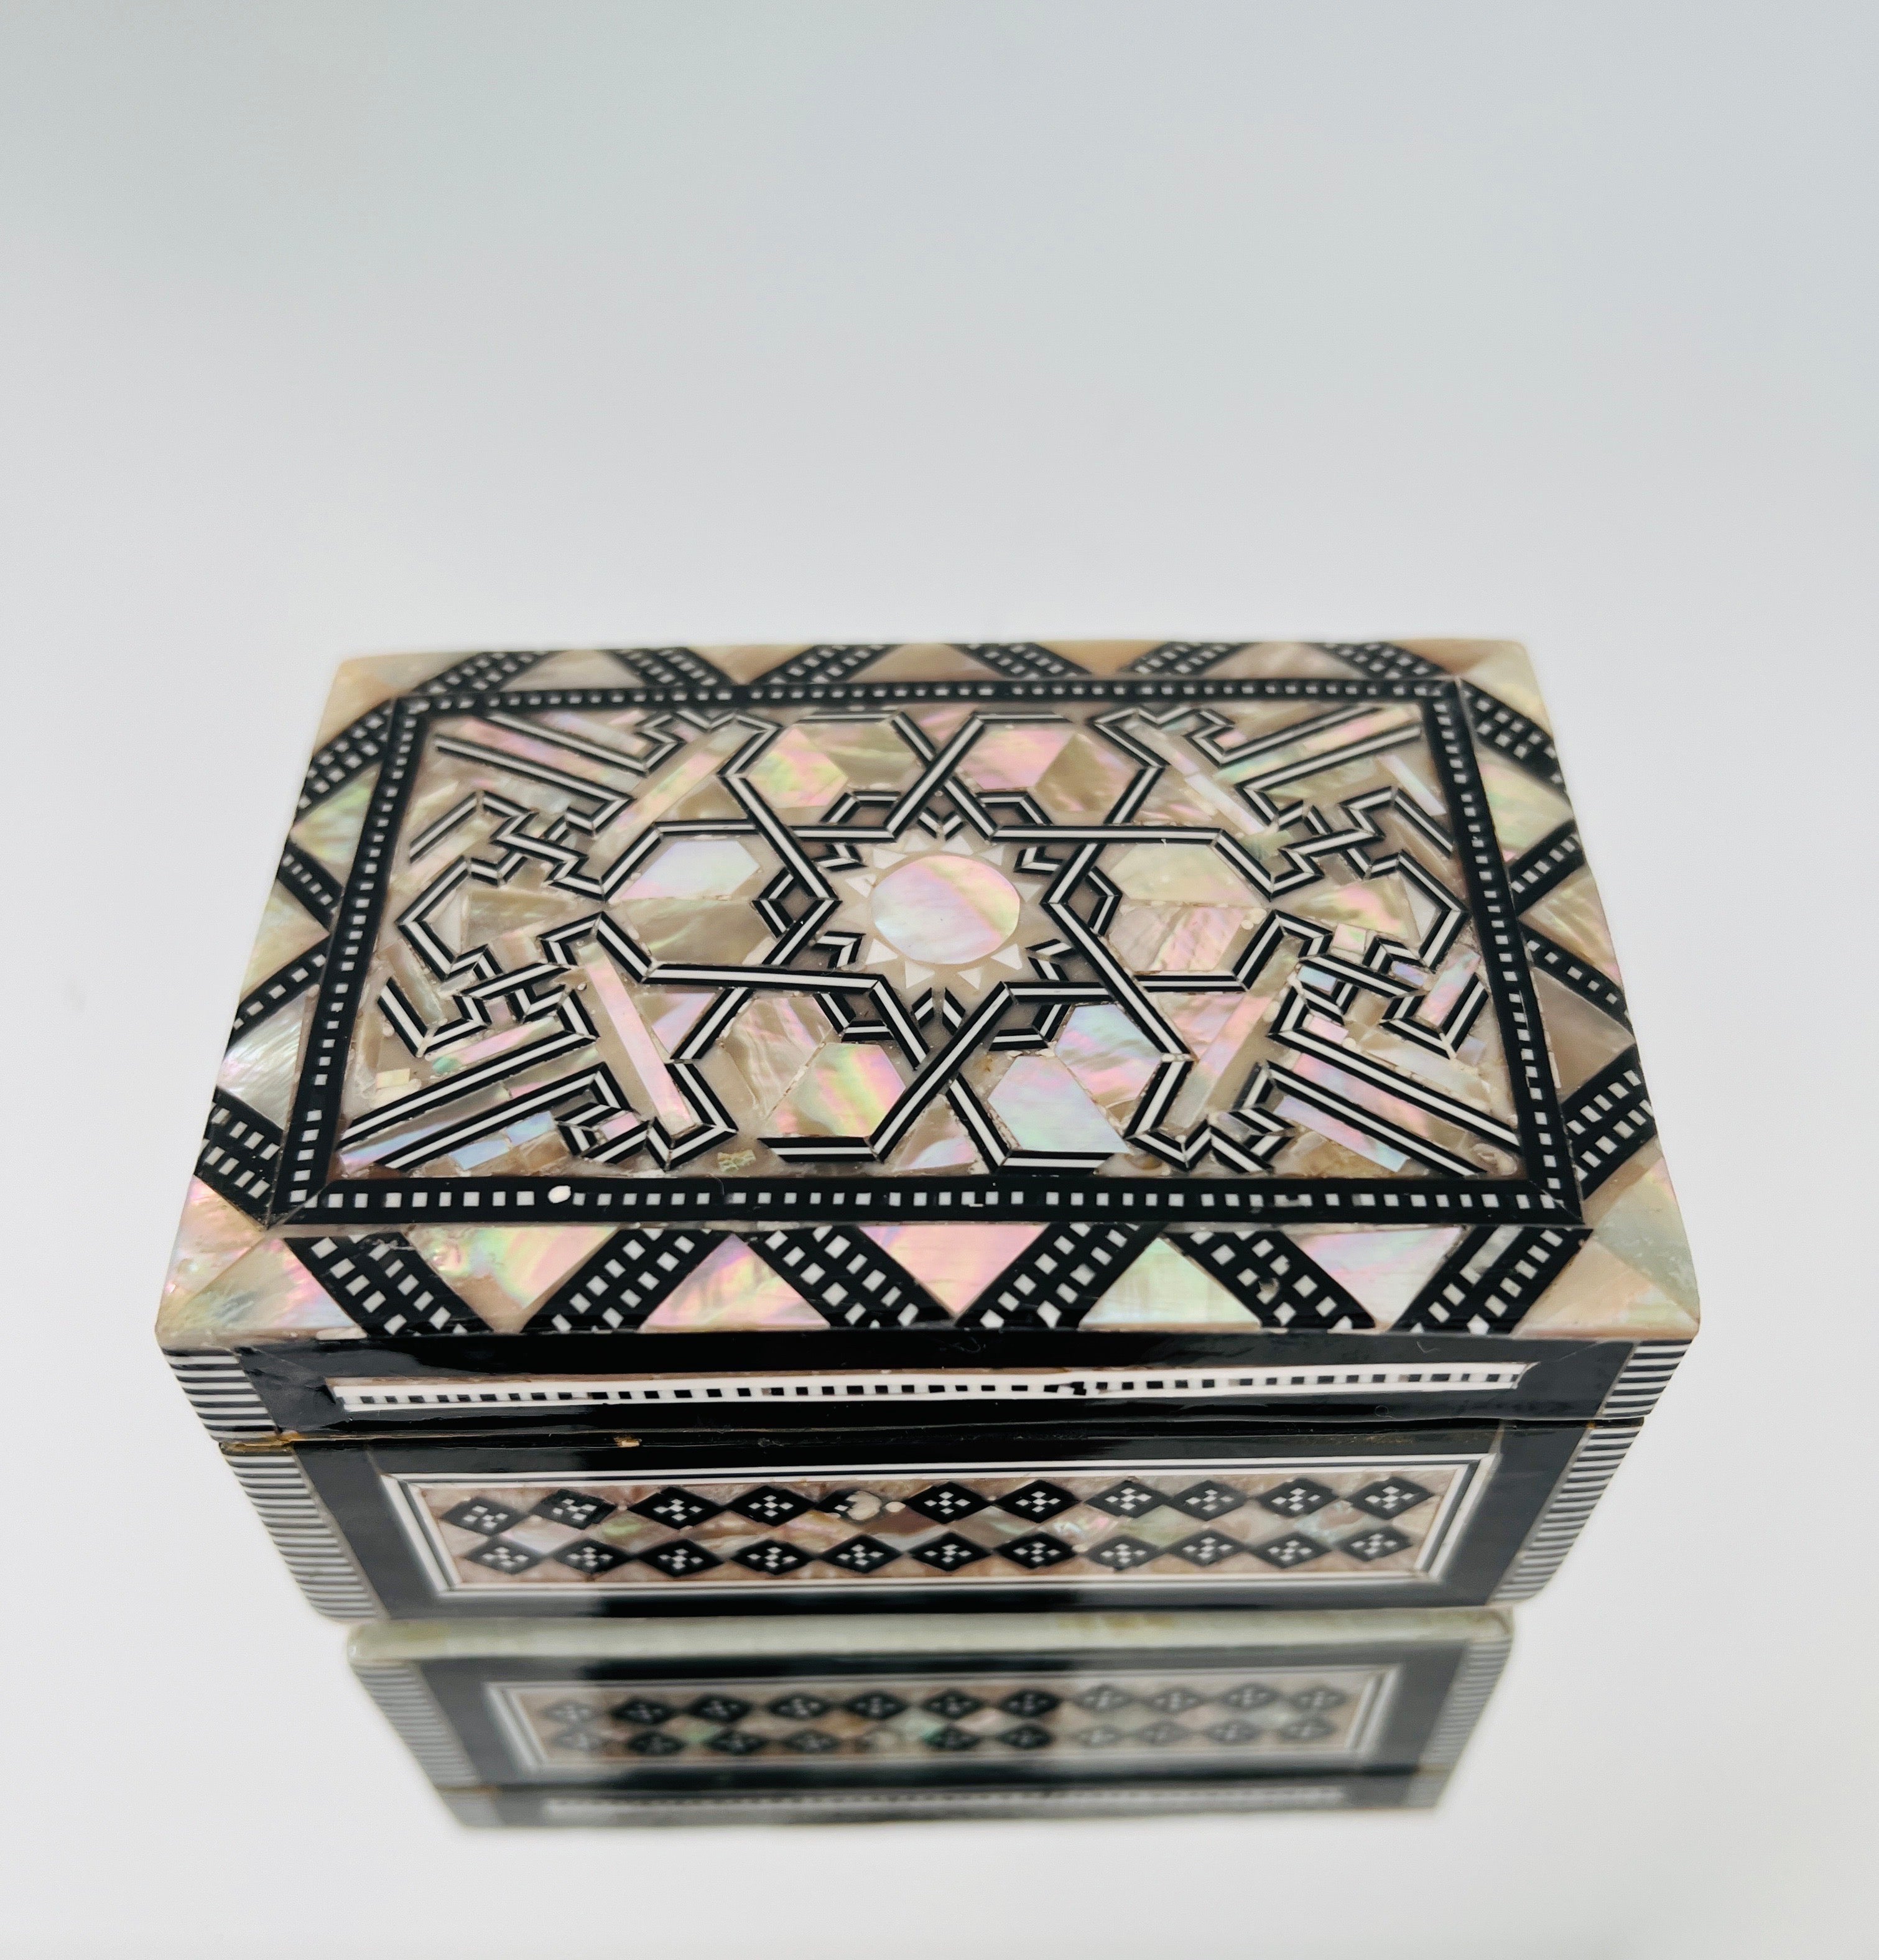 Exquise boîte géométrique en bois fabriquée à la main avec des incrustations de micro-mosaïques de nacre selon la technique Khatam, une ancienne technique d'incrustation persane. Cette boîte de style mauresque présente également des incrustations